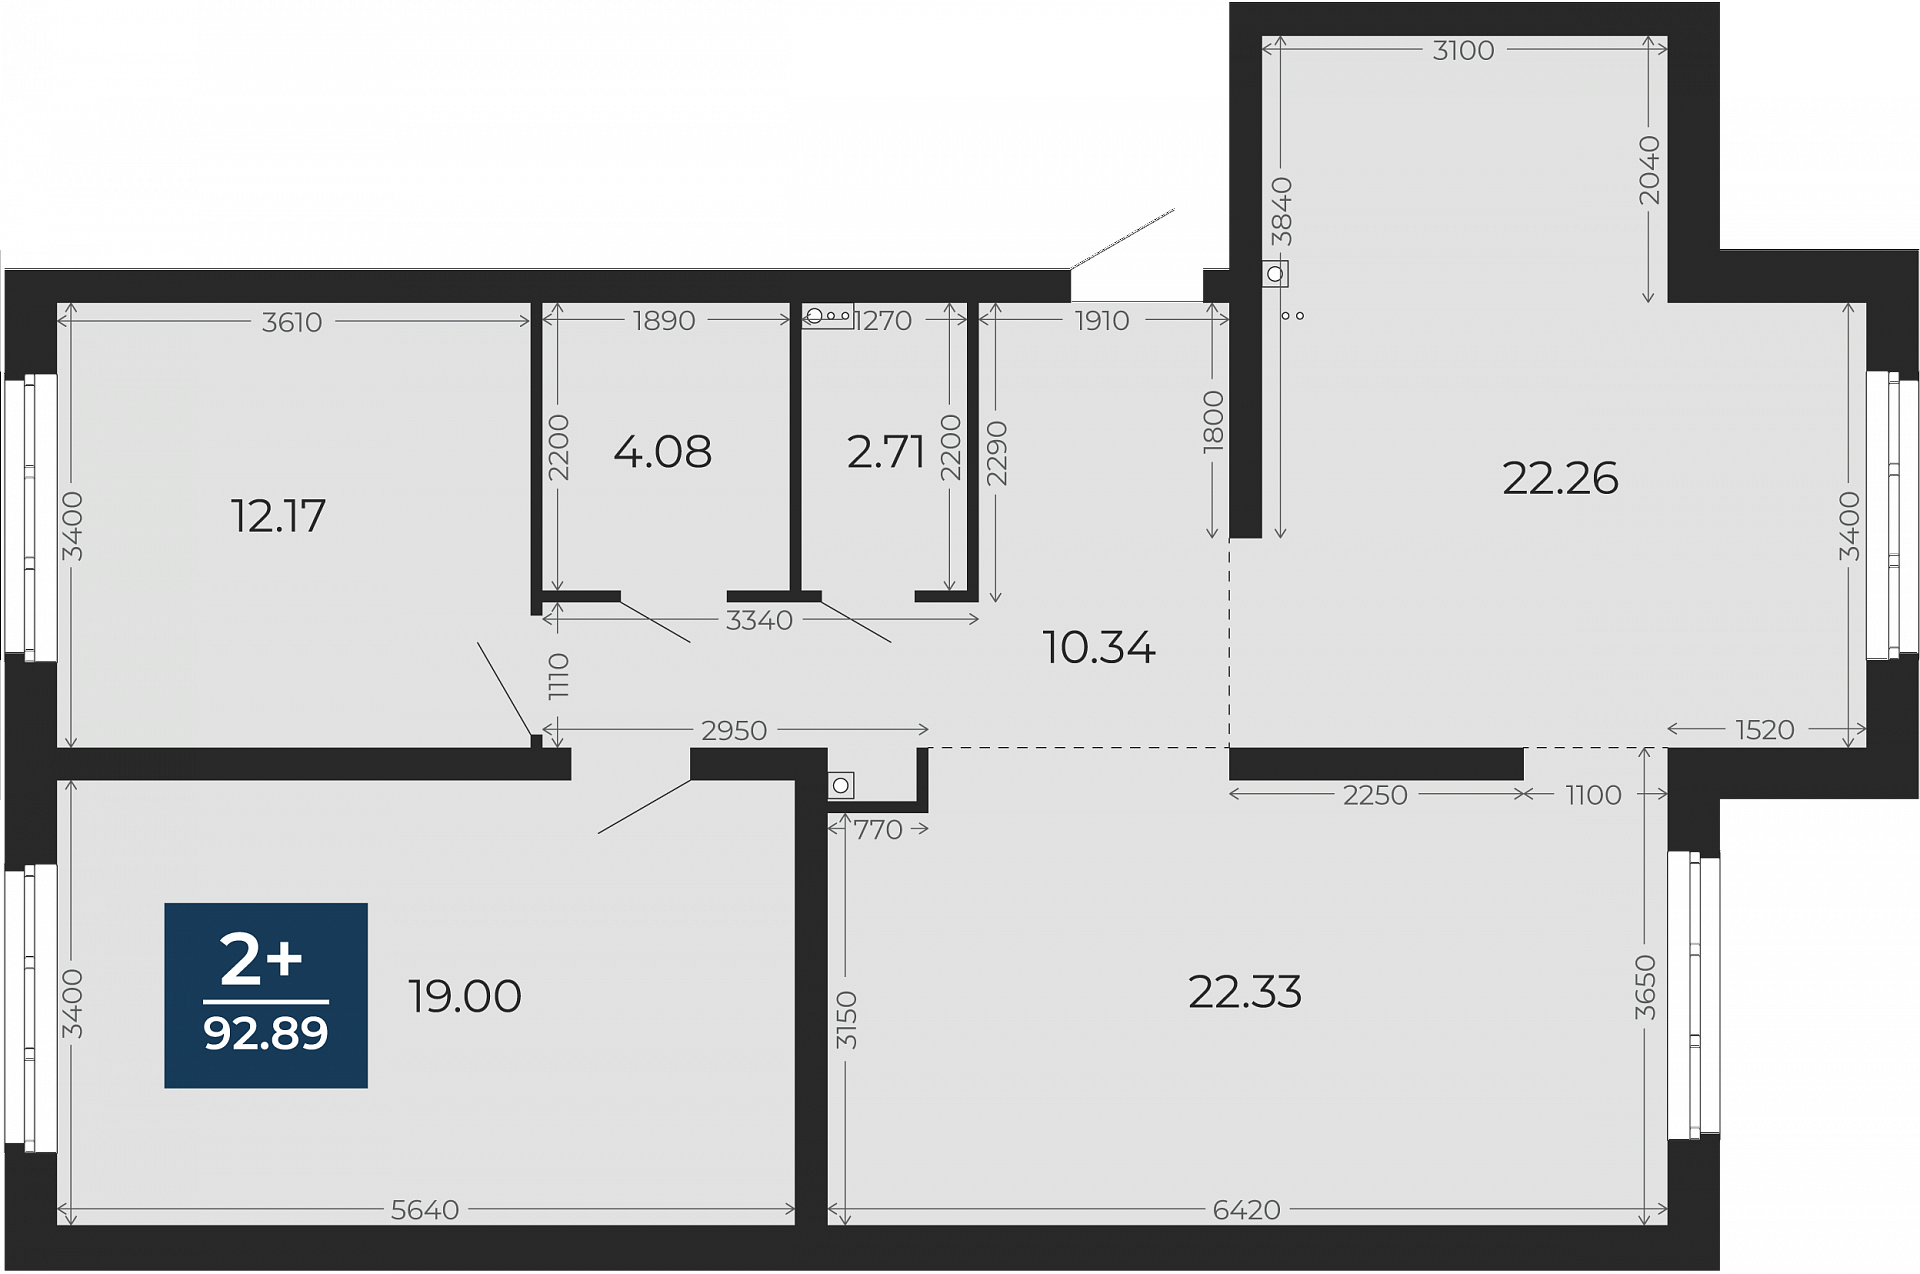 Квартира № 45, 2-комнатная, 92.89 кв. м, 1 этаж